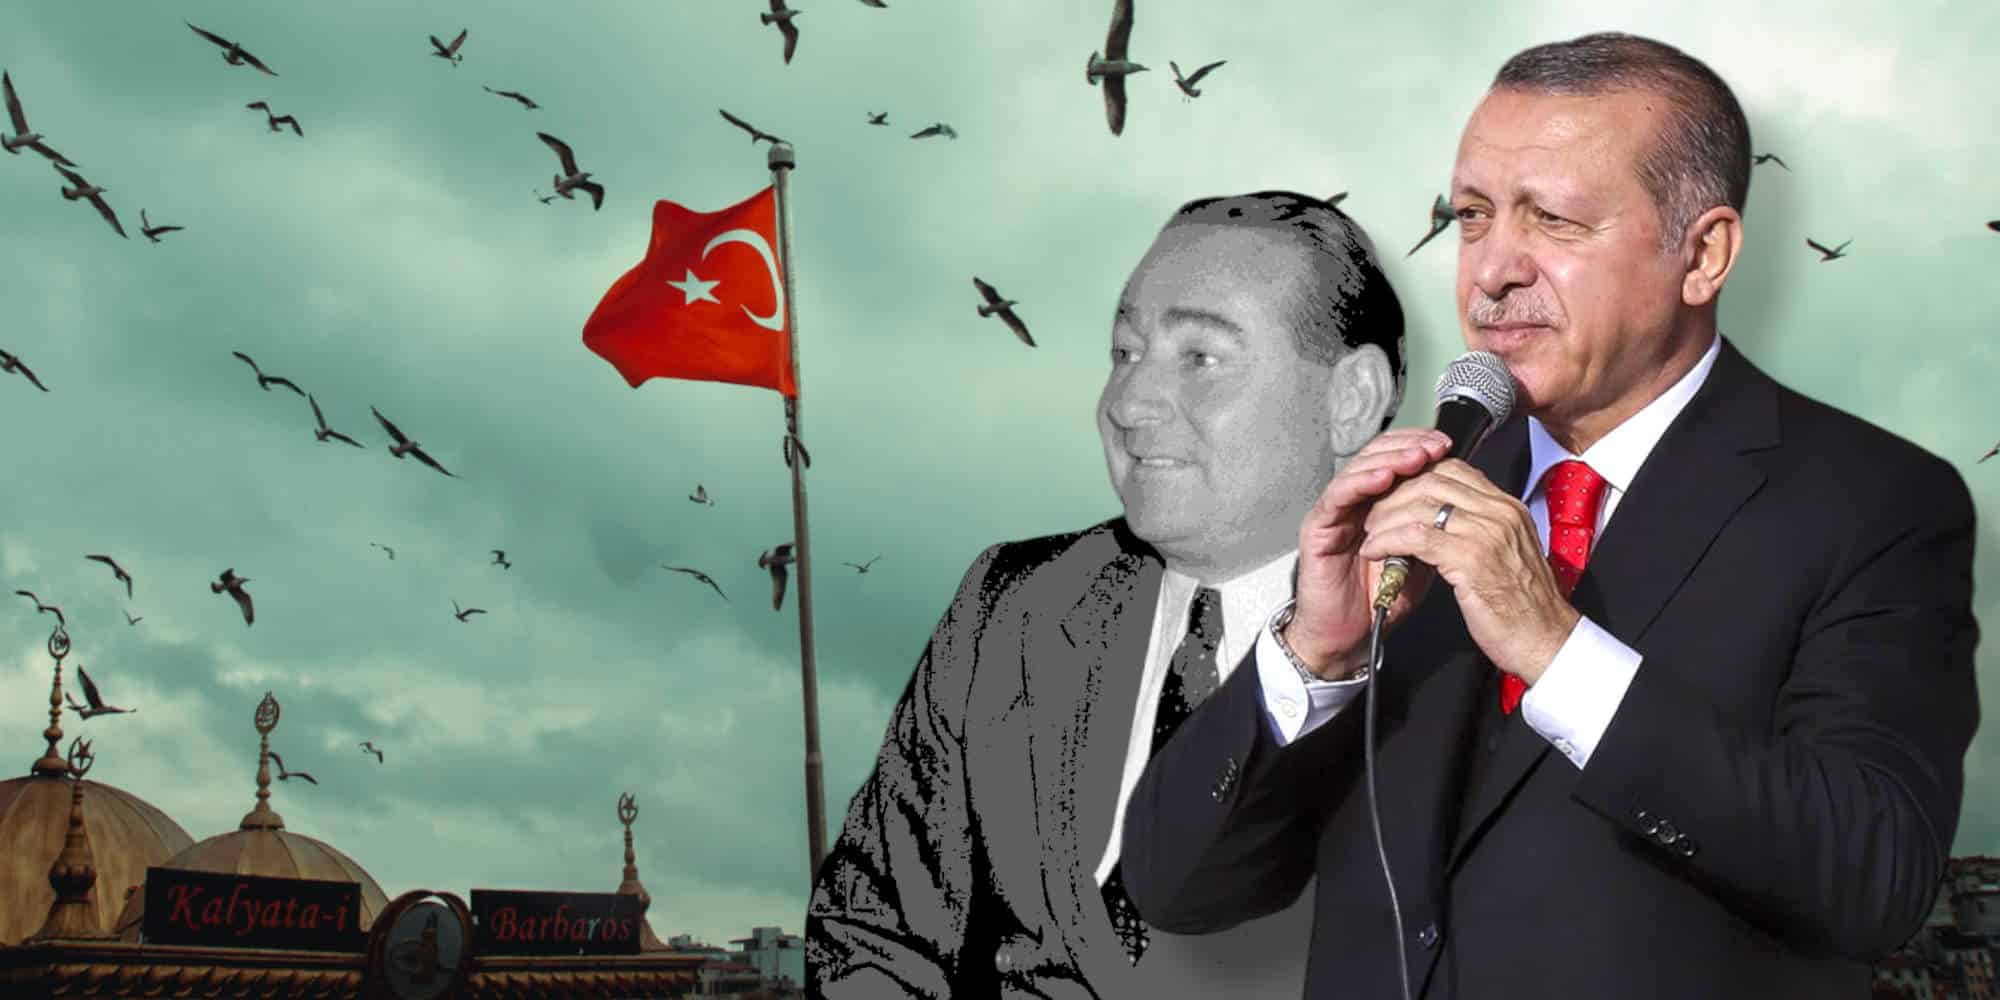 Ο Ρετζέπ Ταγίπ Ερντογάν και ο πολιτικός του μέντορας στην Τουρκία, Αντνάν Μεντερές